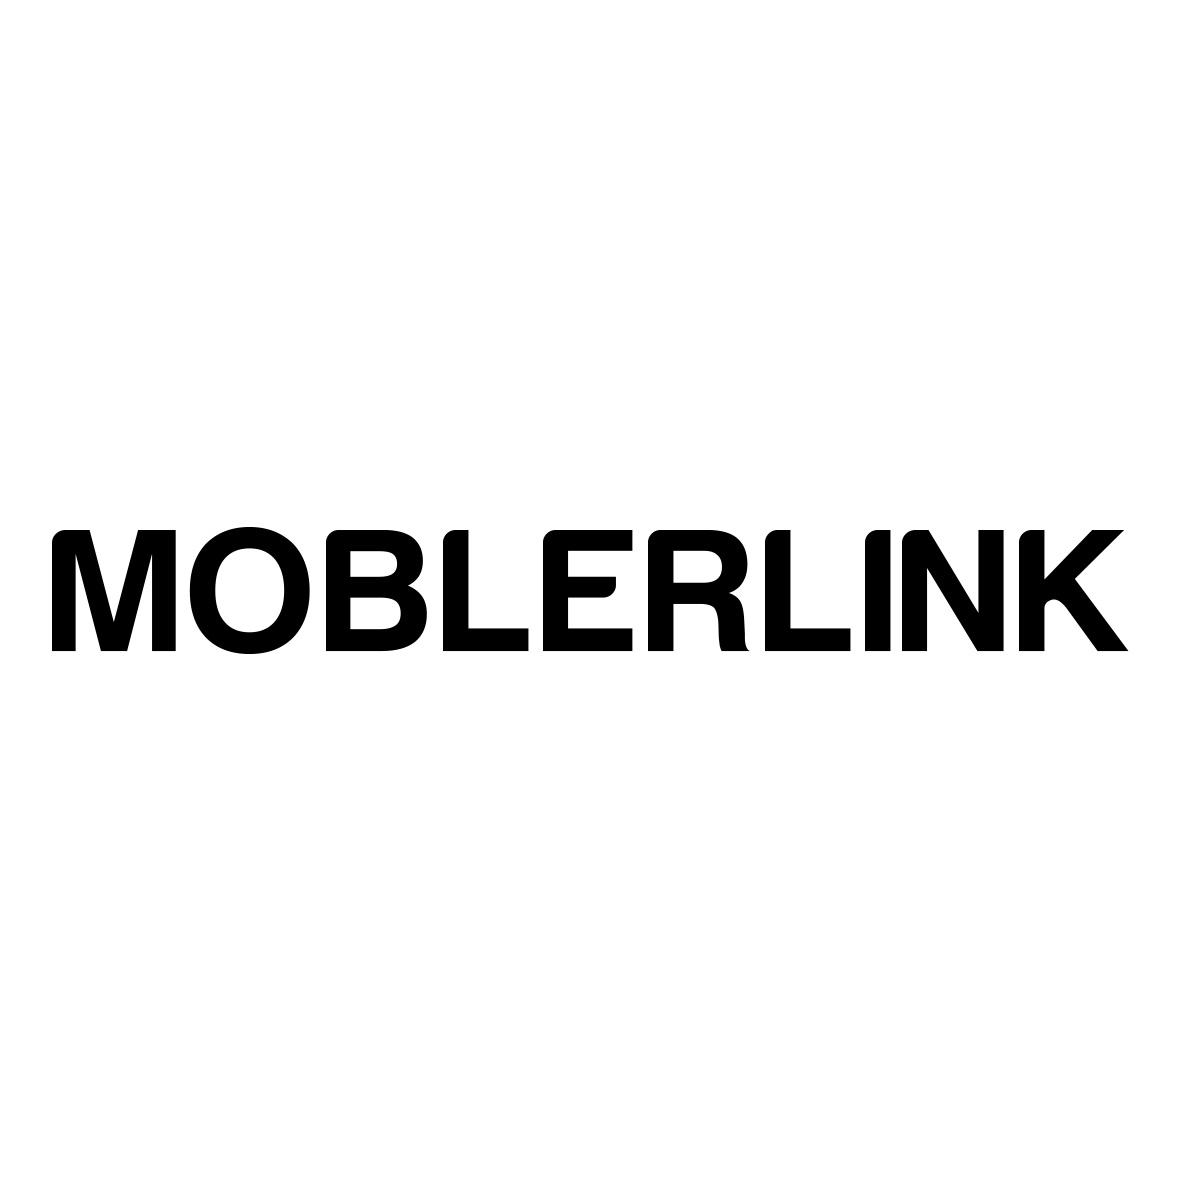 MOBLERLINK